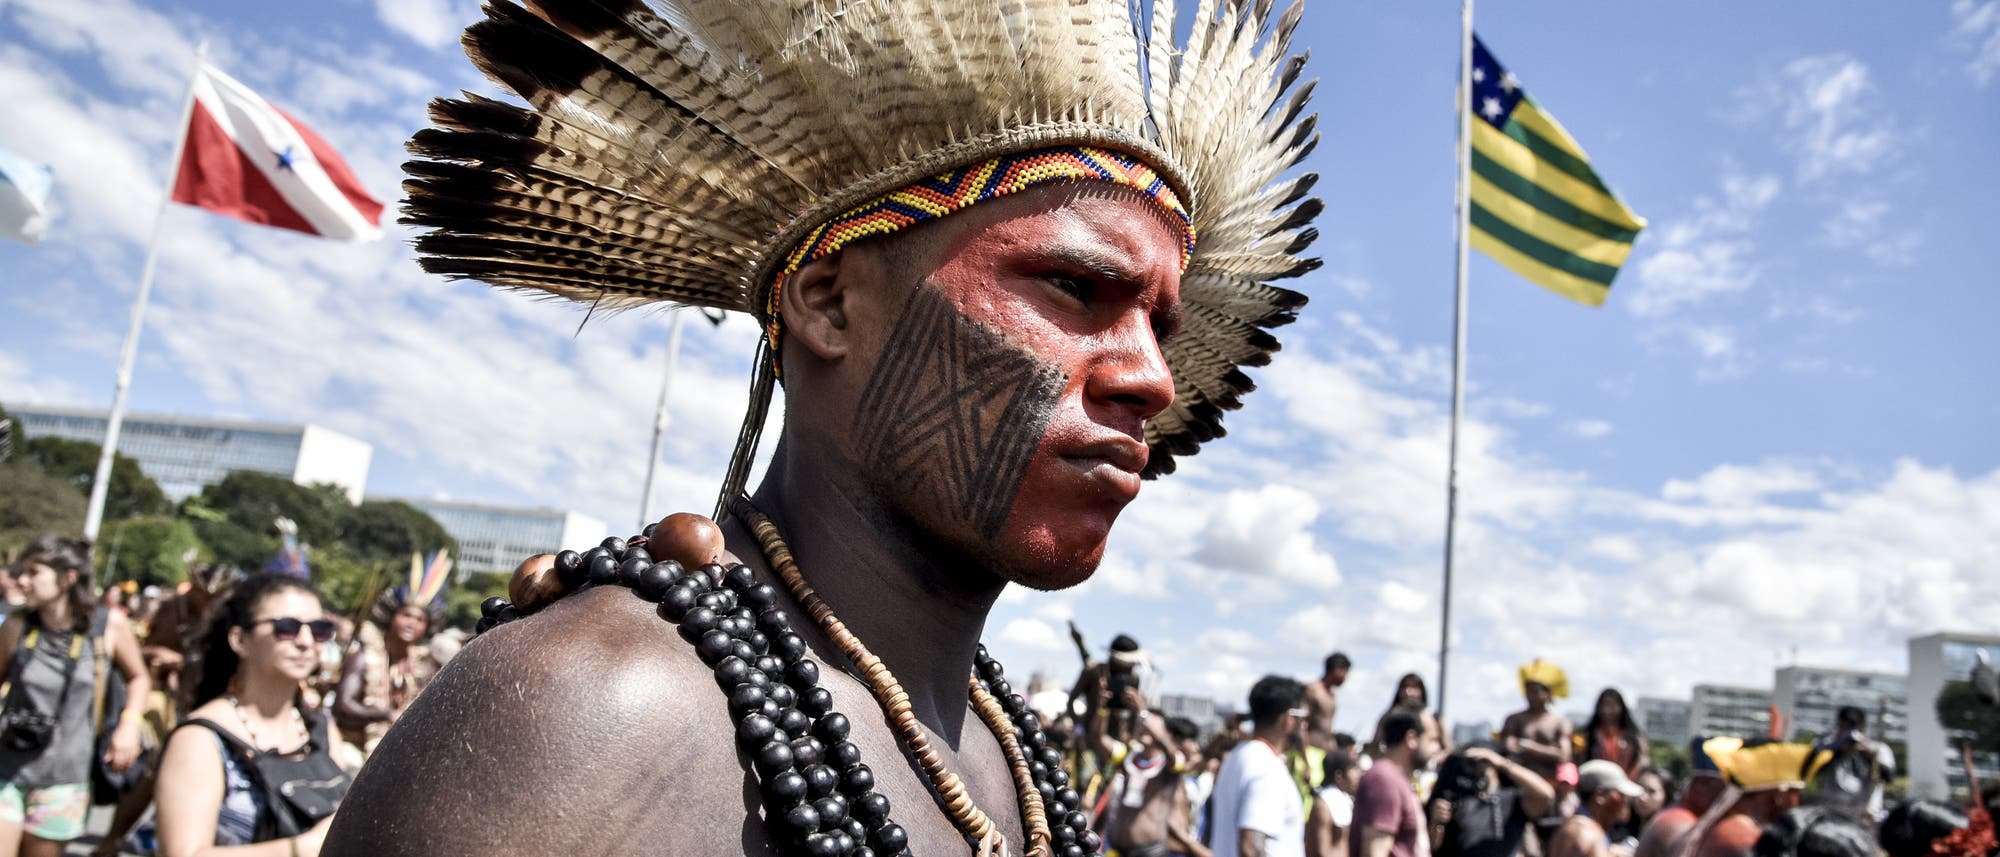 Schon 2018 demonstrierten Indigene für ihre Rechte in Brasilia